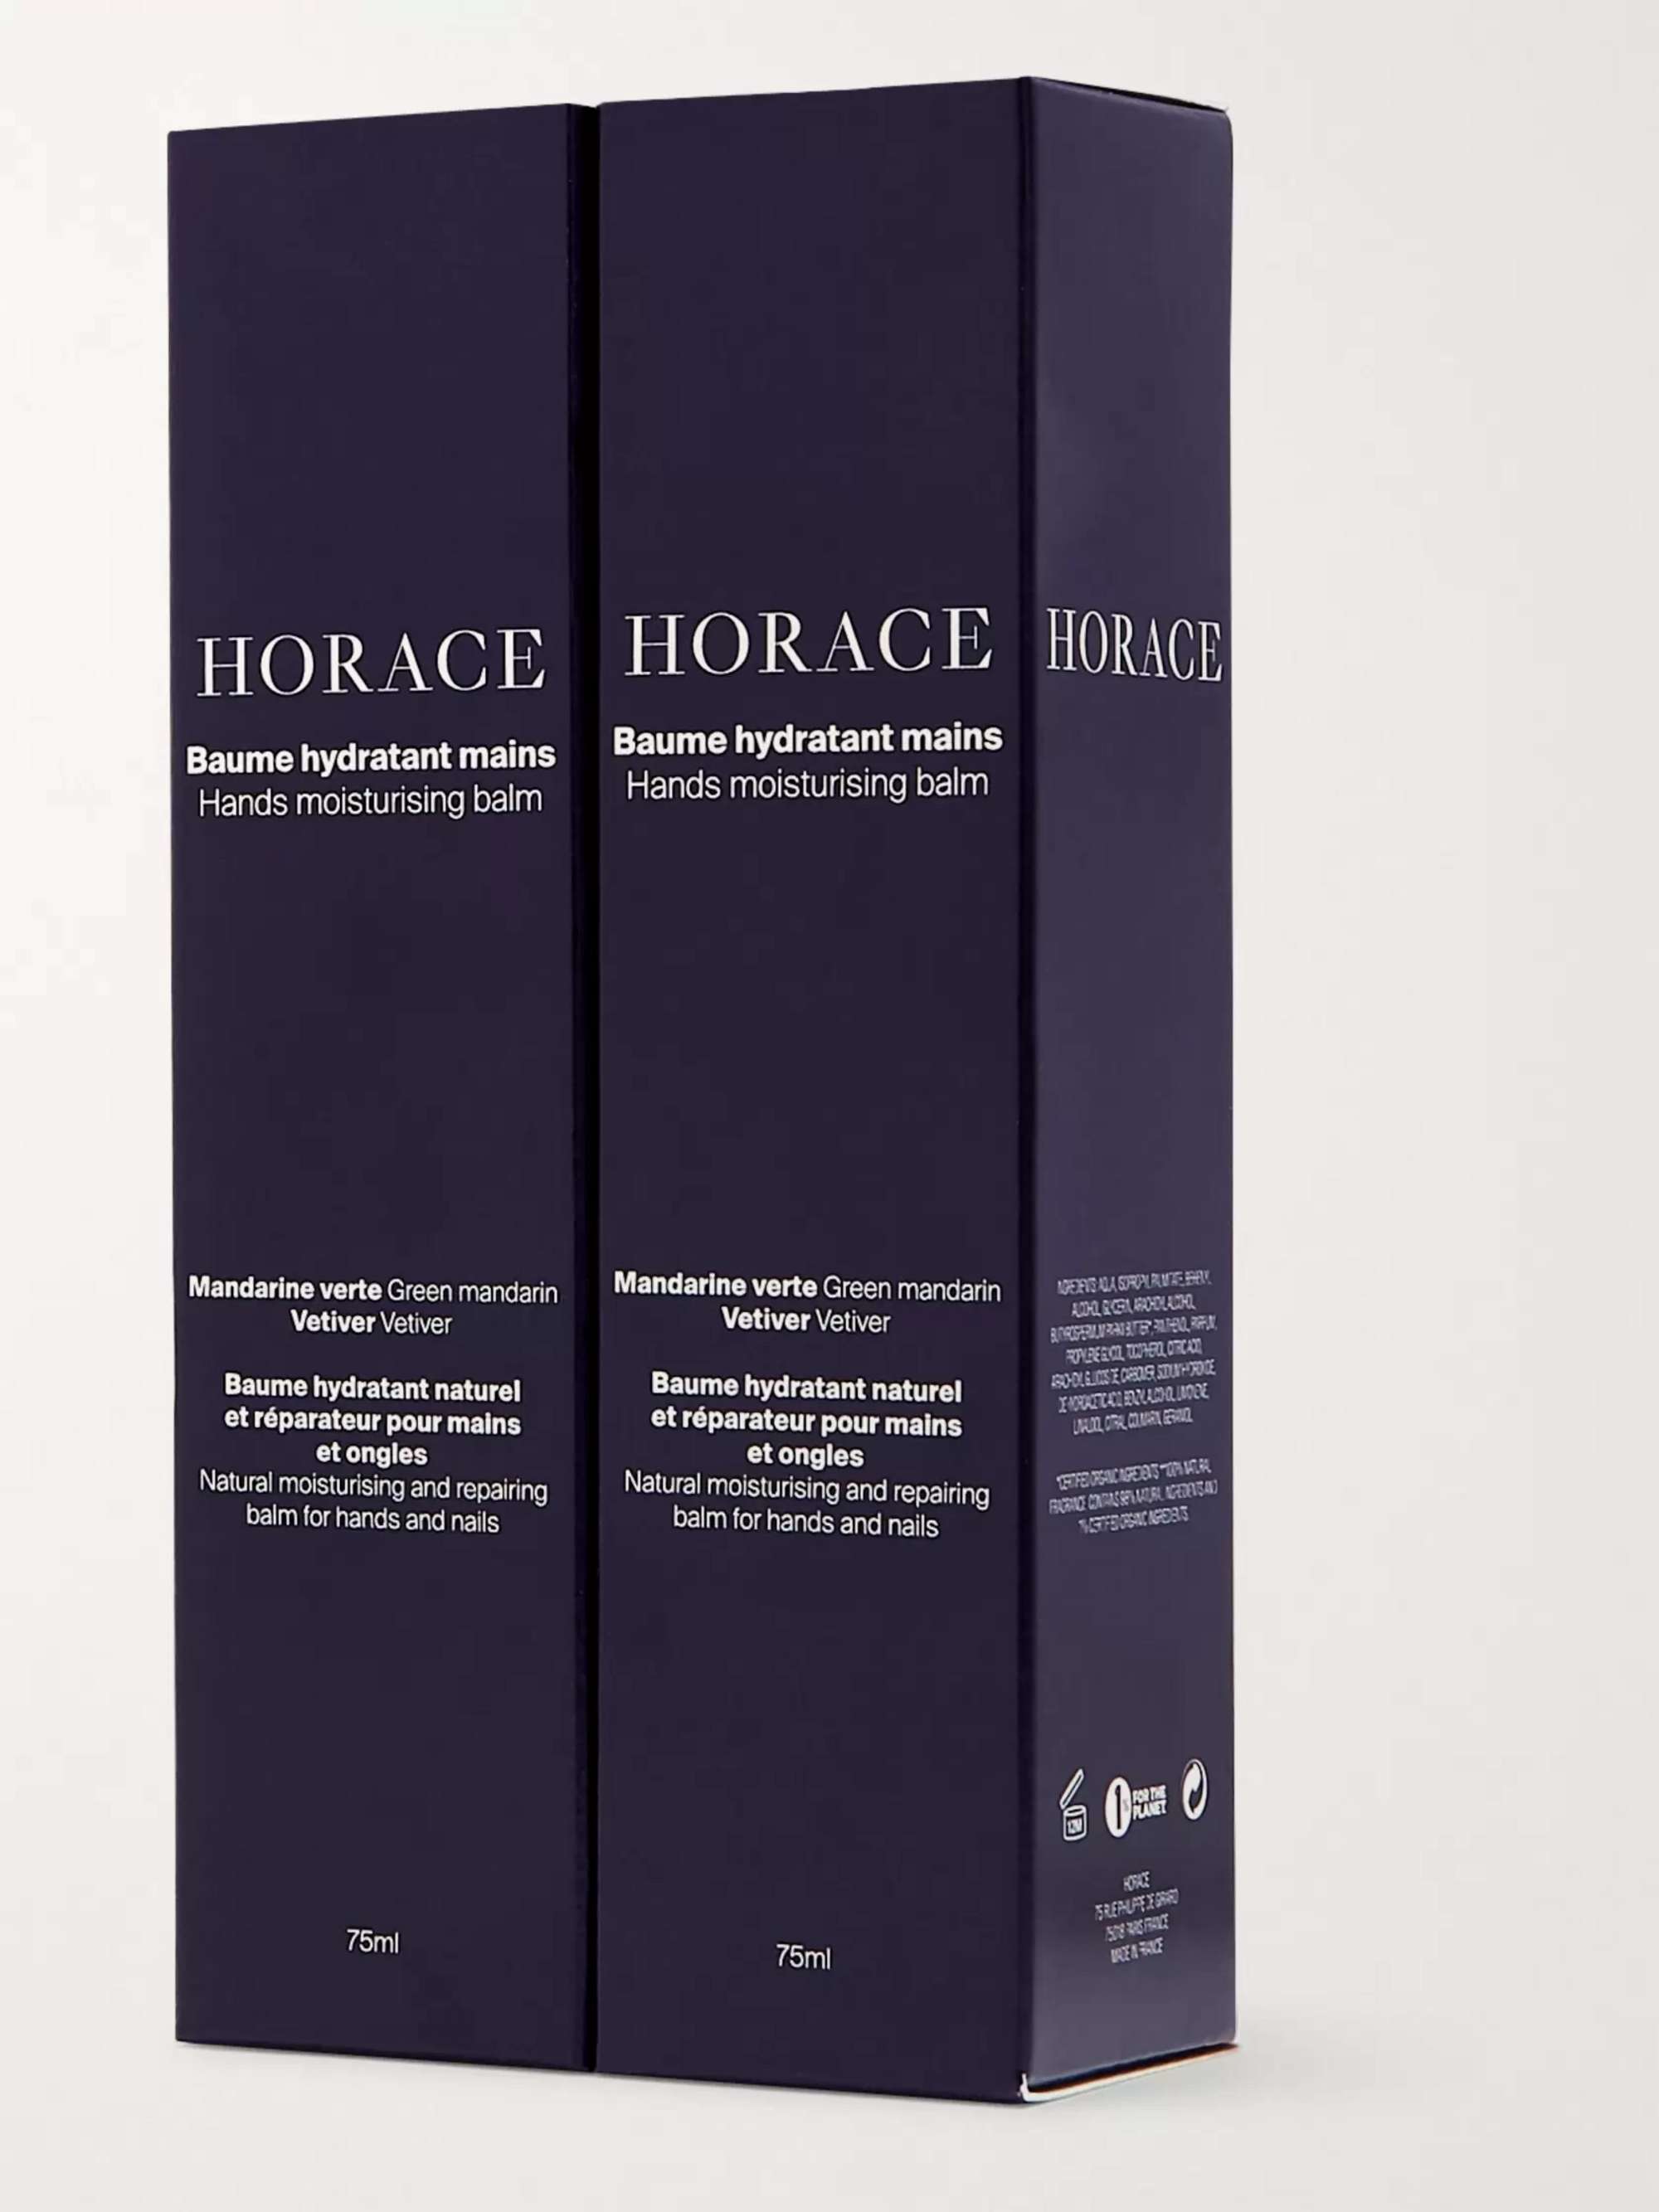 HORACE Hands Moisturising Balm Duo, 2 x 75ml